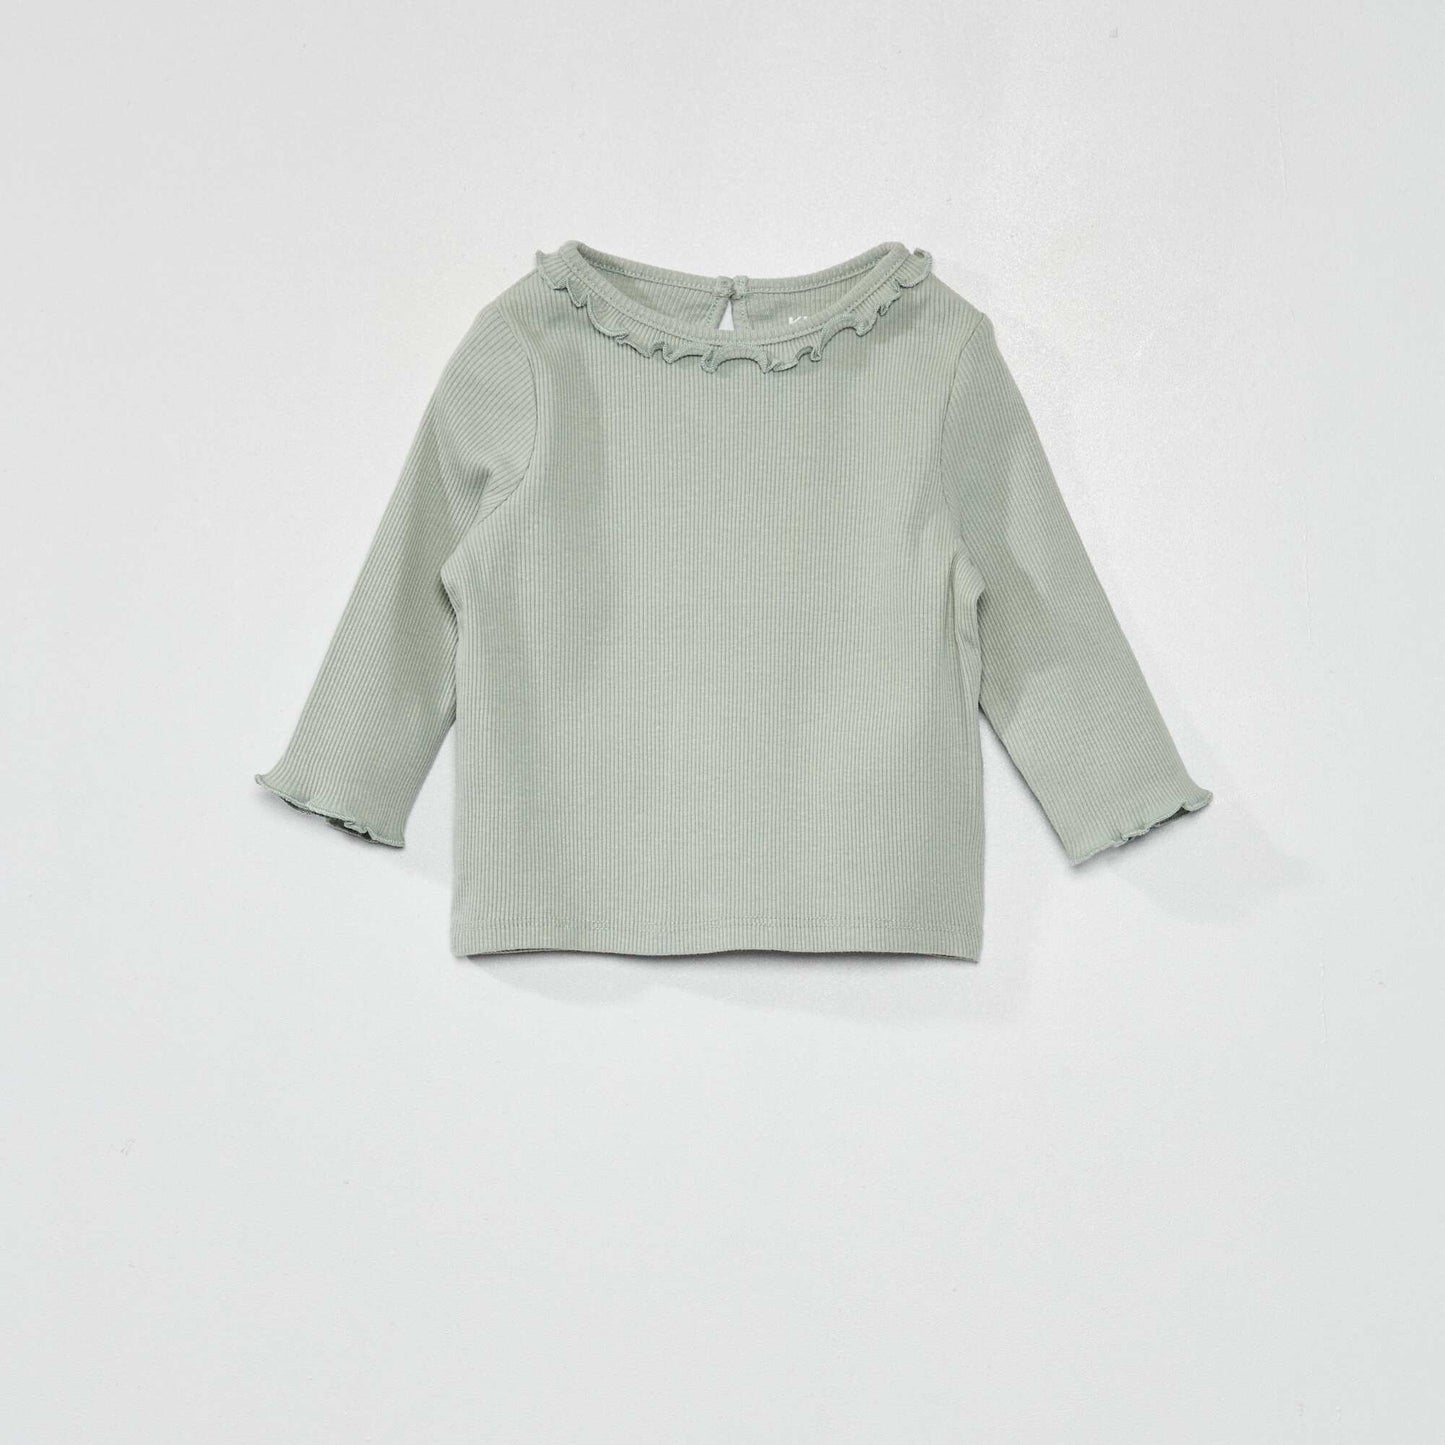 Ribbed knit T-shirt with ruffled collar ash green